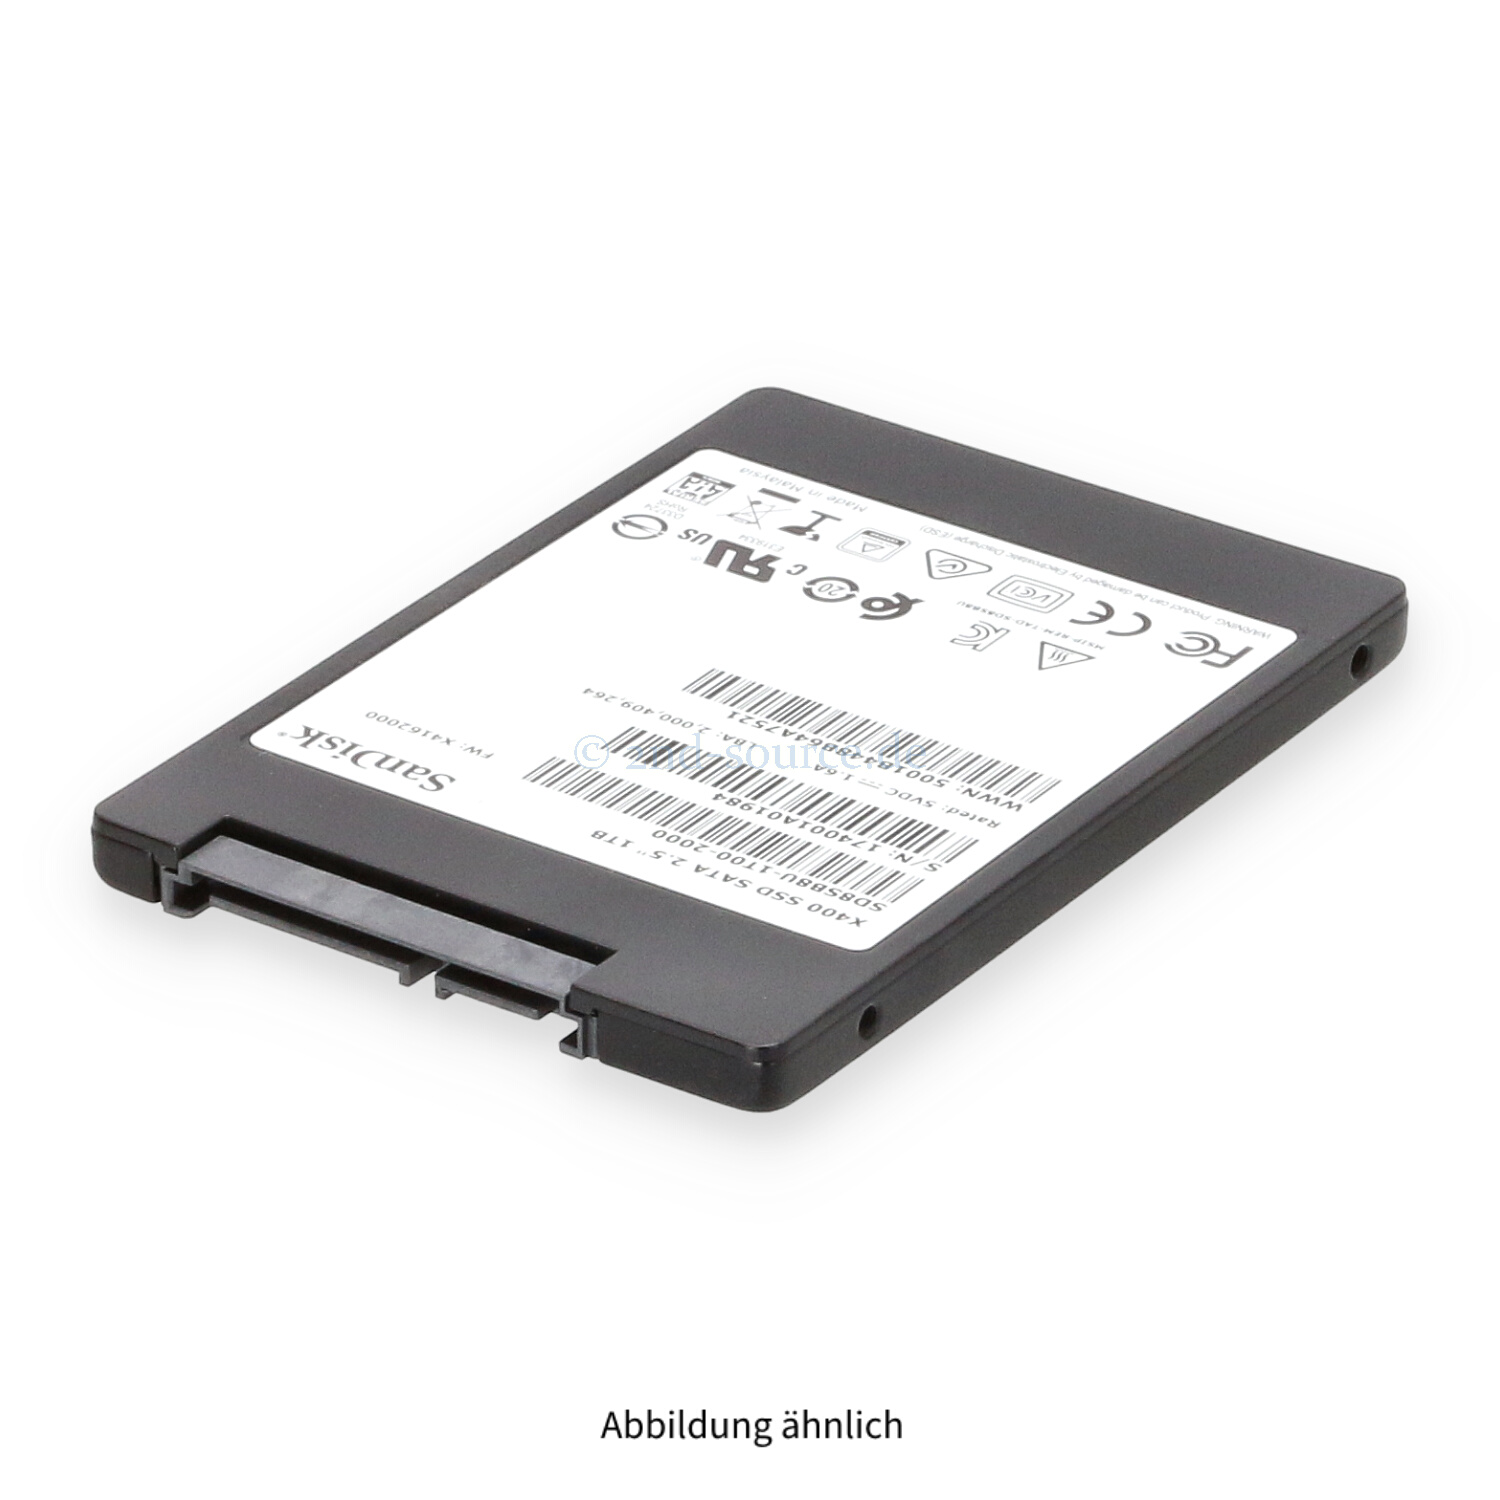 SanDisk X400 1TB SAS 6G SFF Read Intensive SSD SD8SB8U-1T00-2000